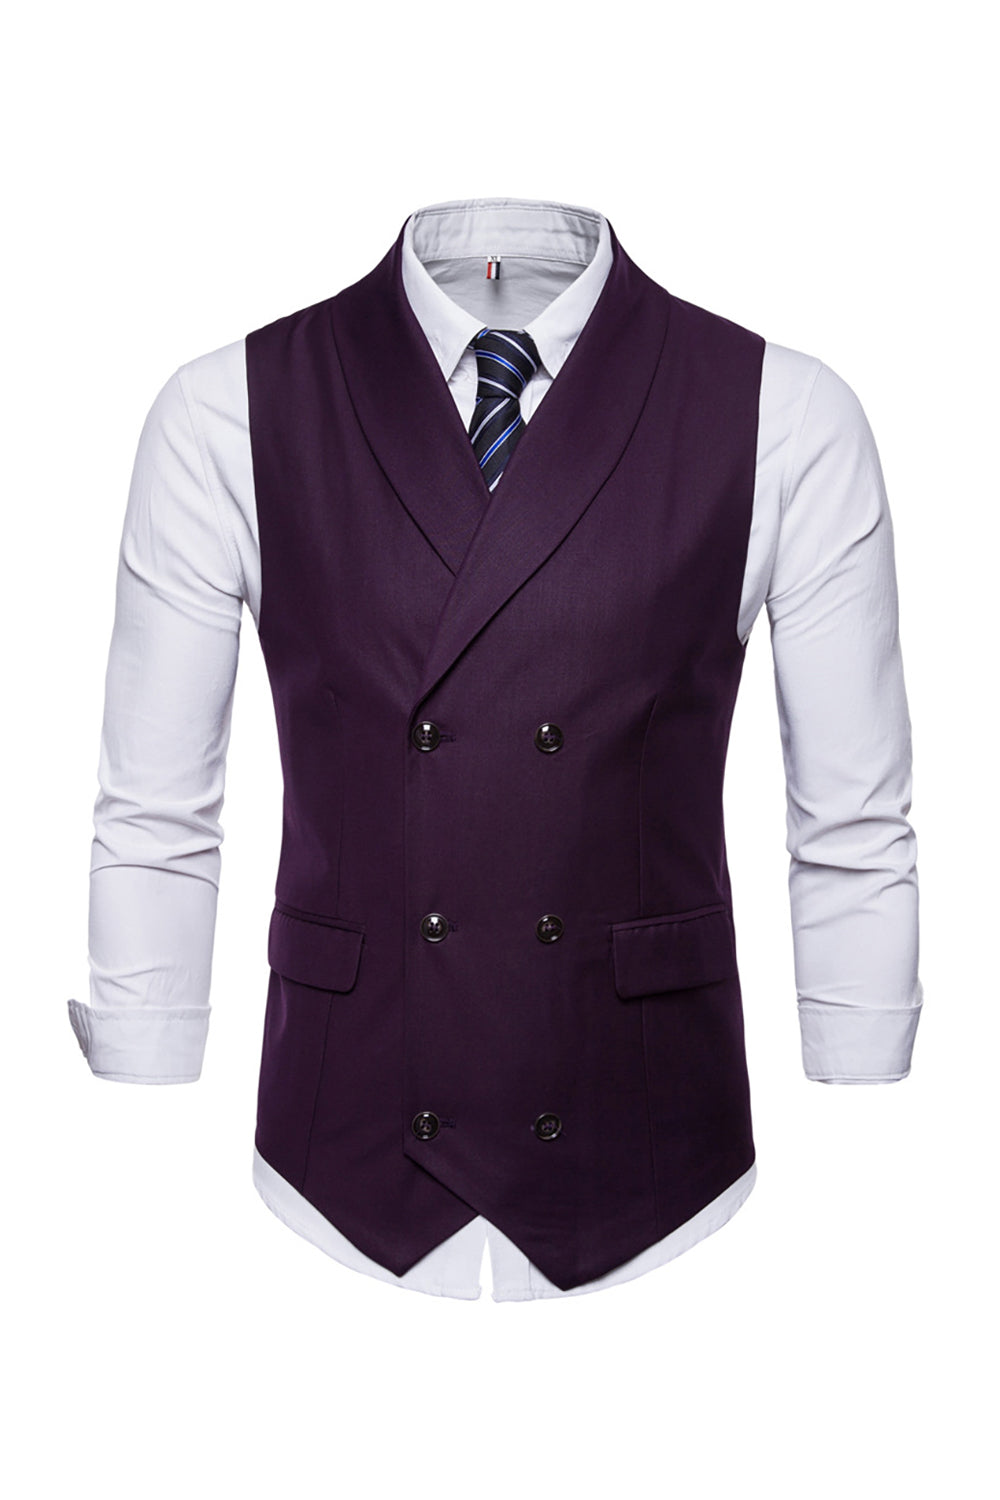 Black Double Breasted Shawl Lapel Men's Suit Vest